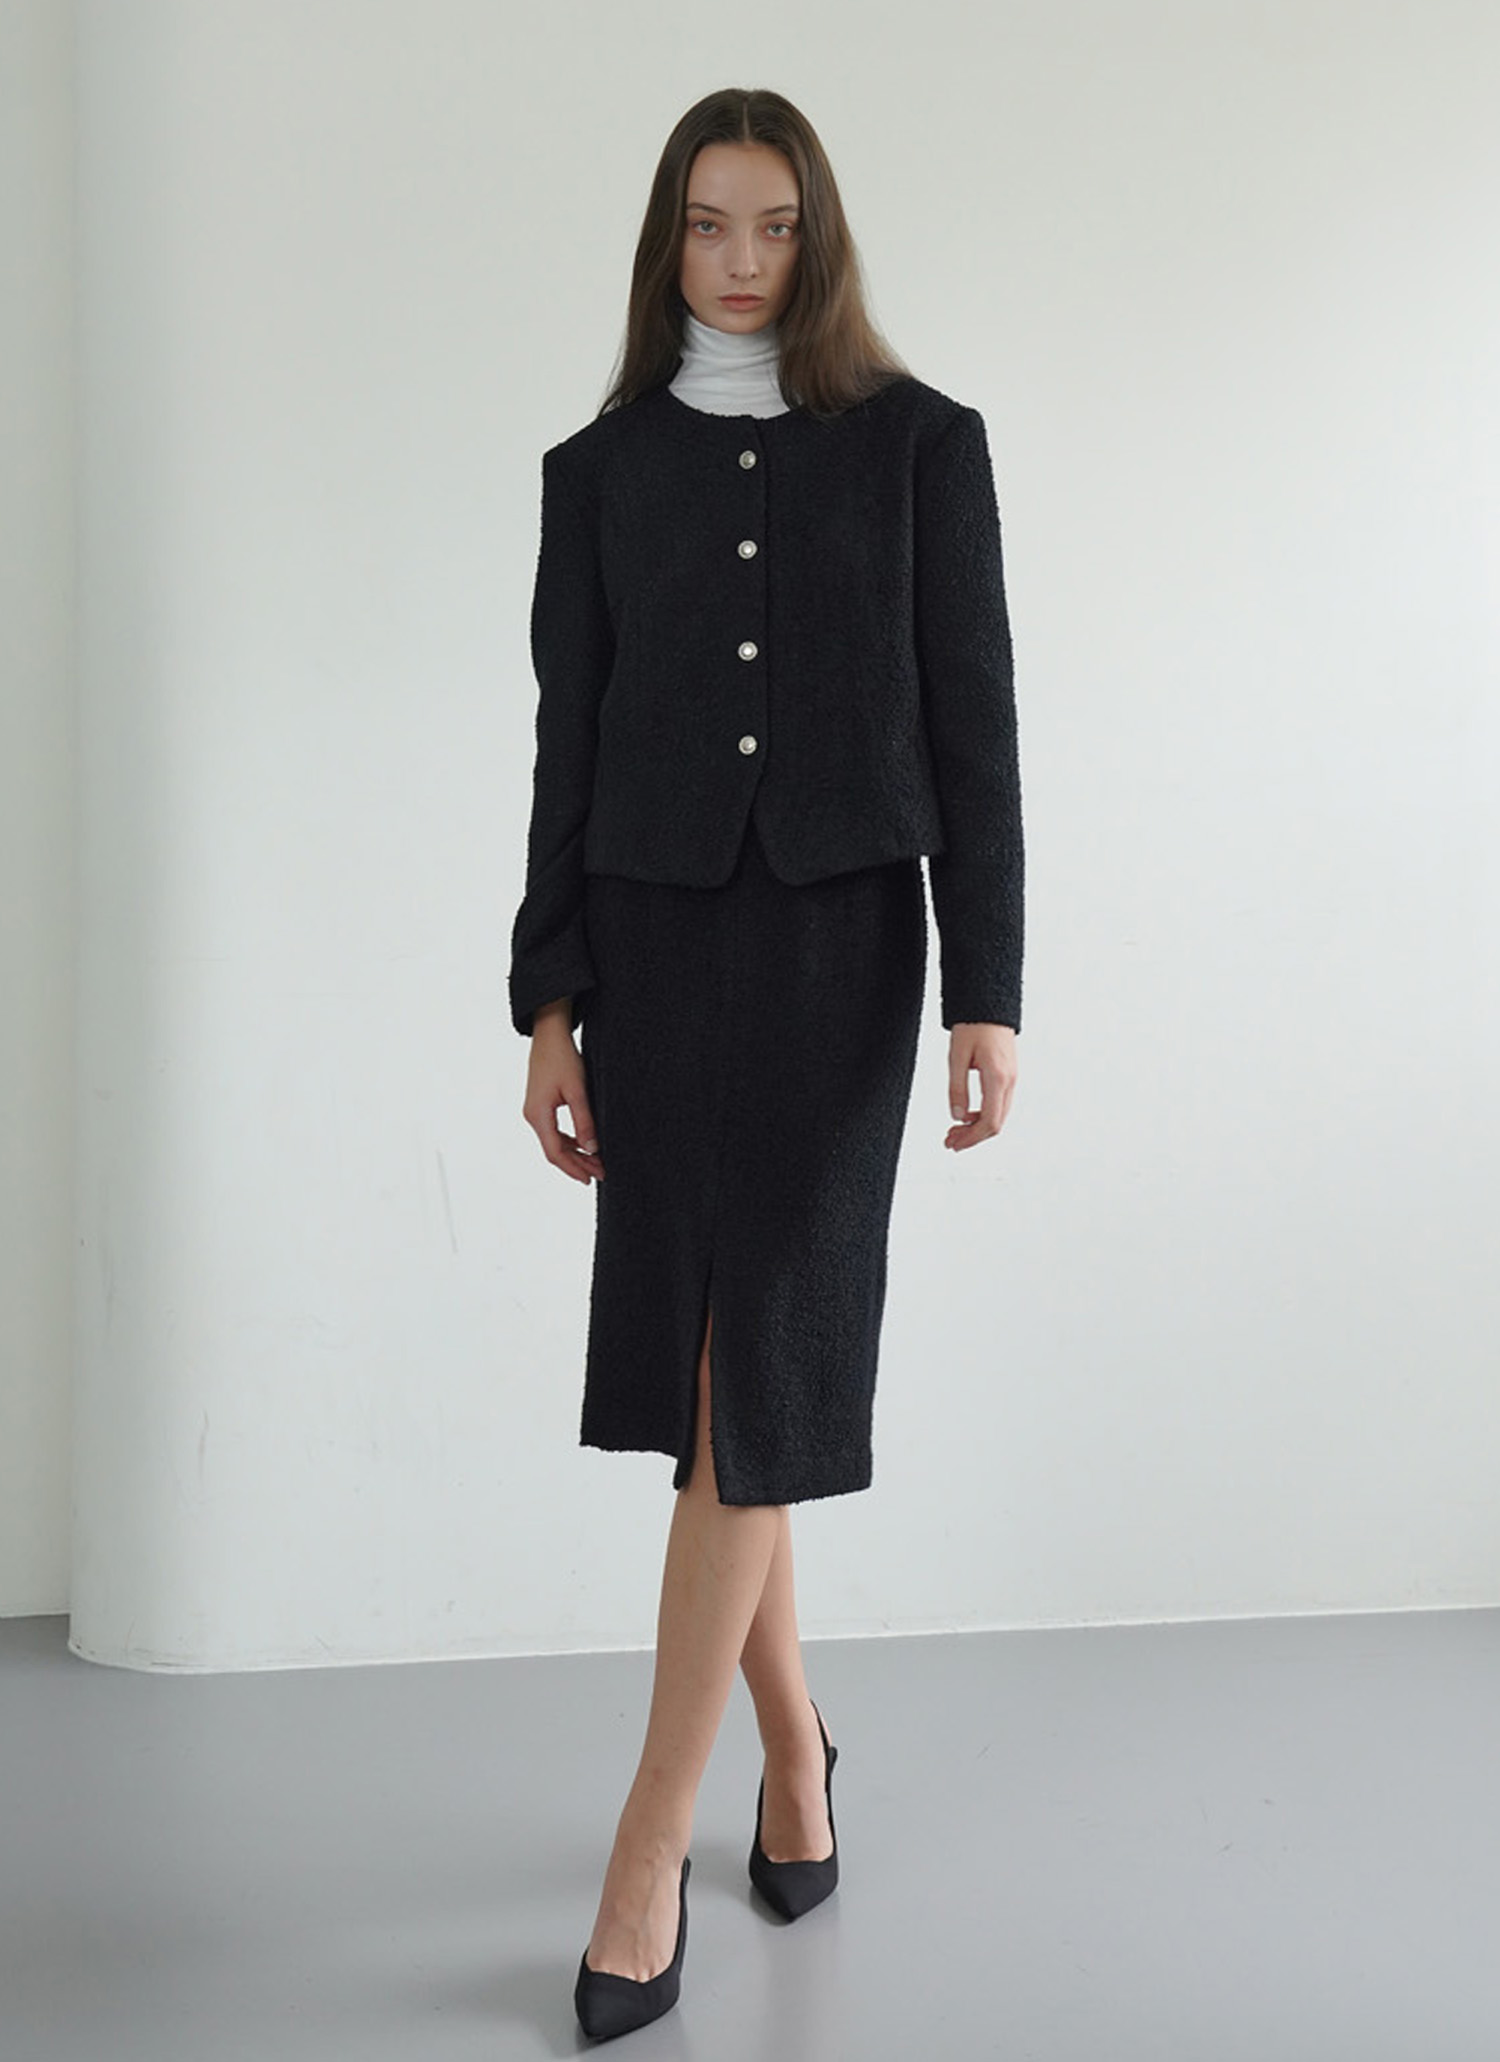 Modern black tweed skirt